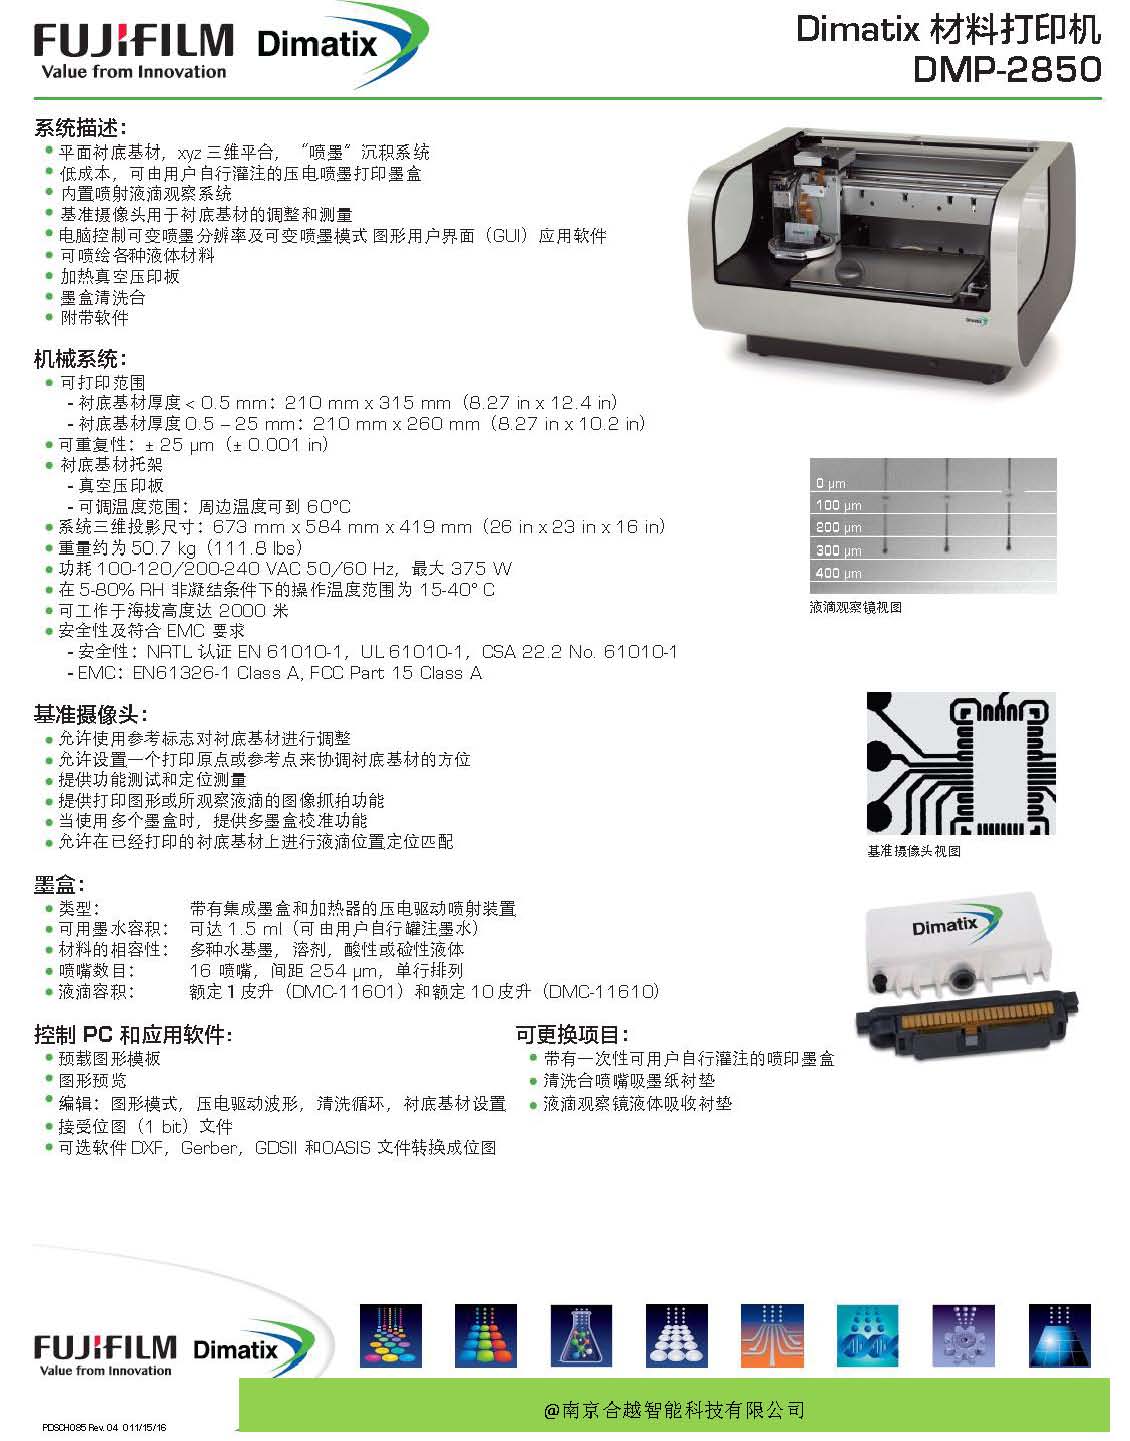 富士Dimatix DMP系列微电子材料喷墨打印机